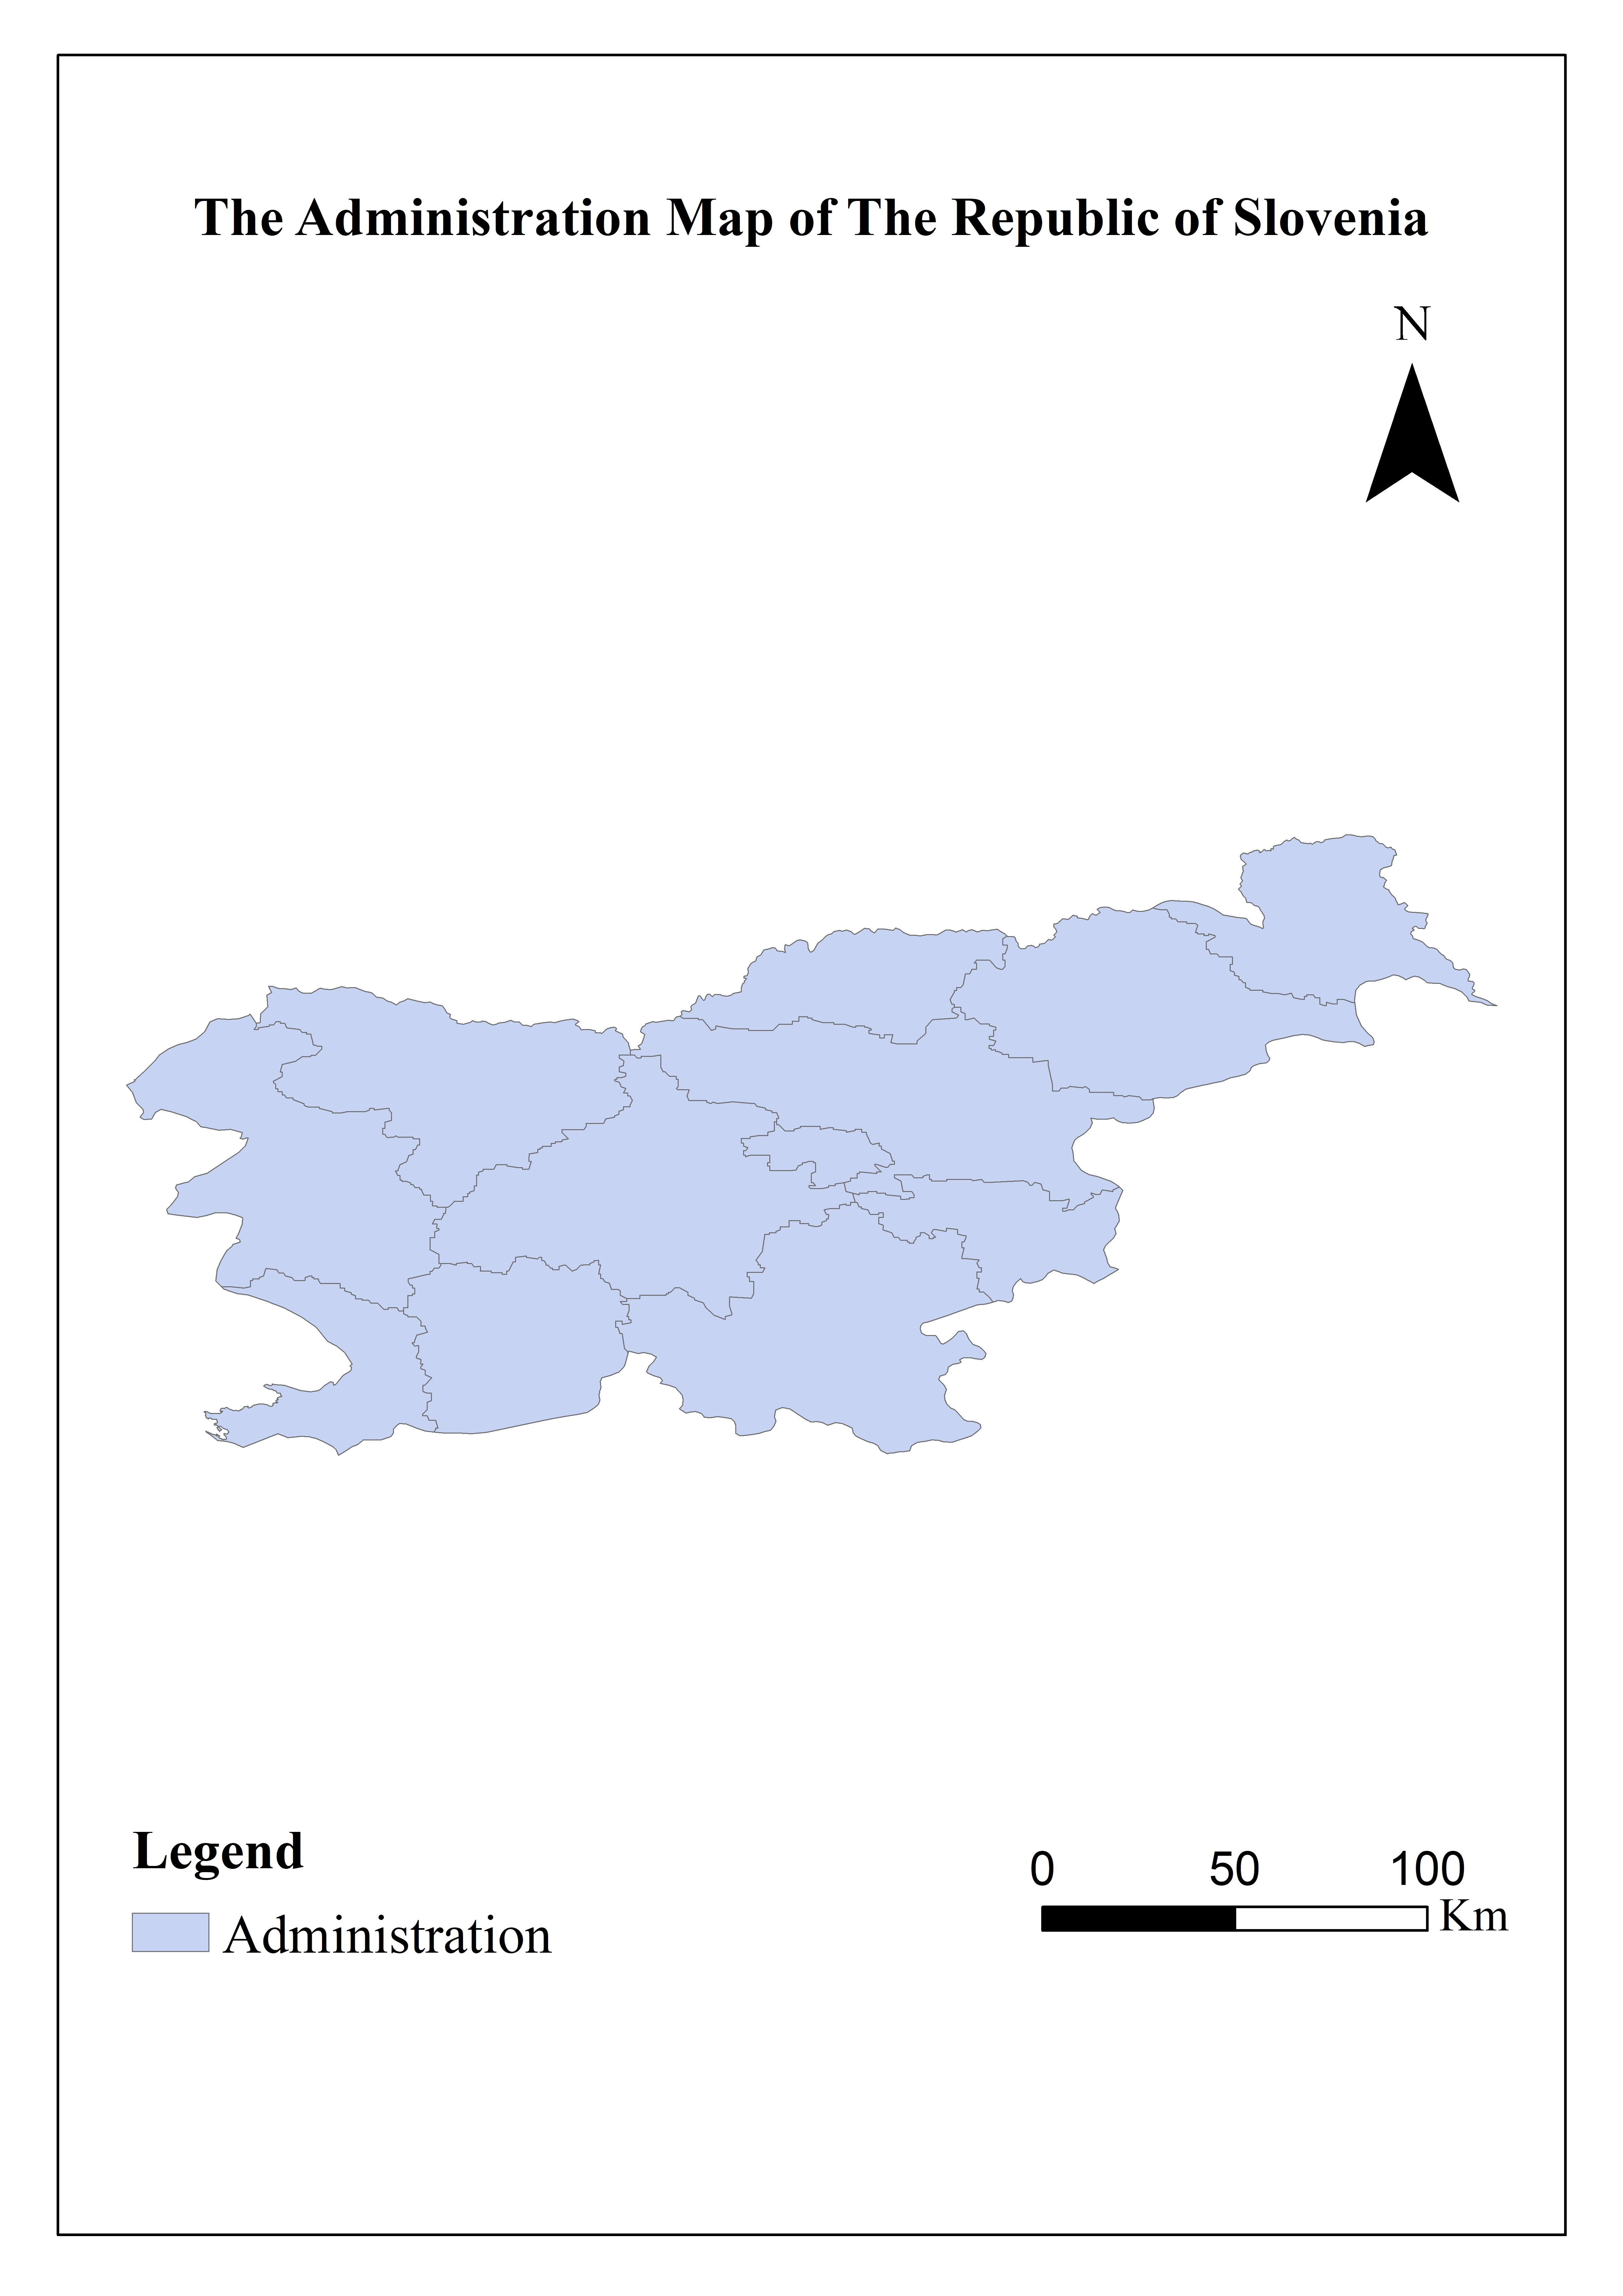 Basic national information database of The Republic of Slovenia